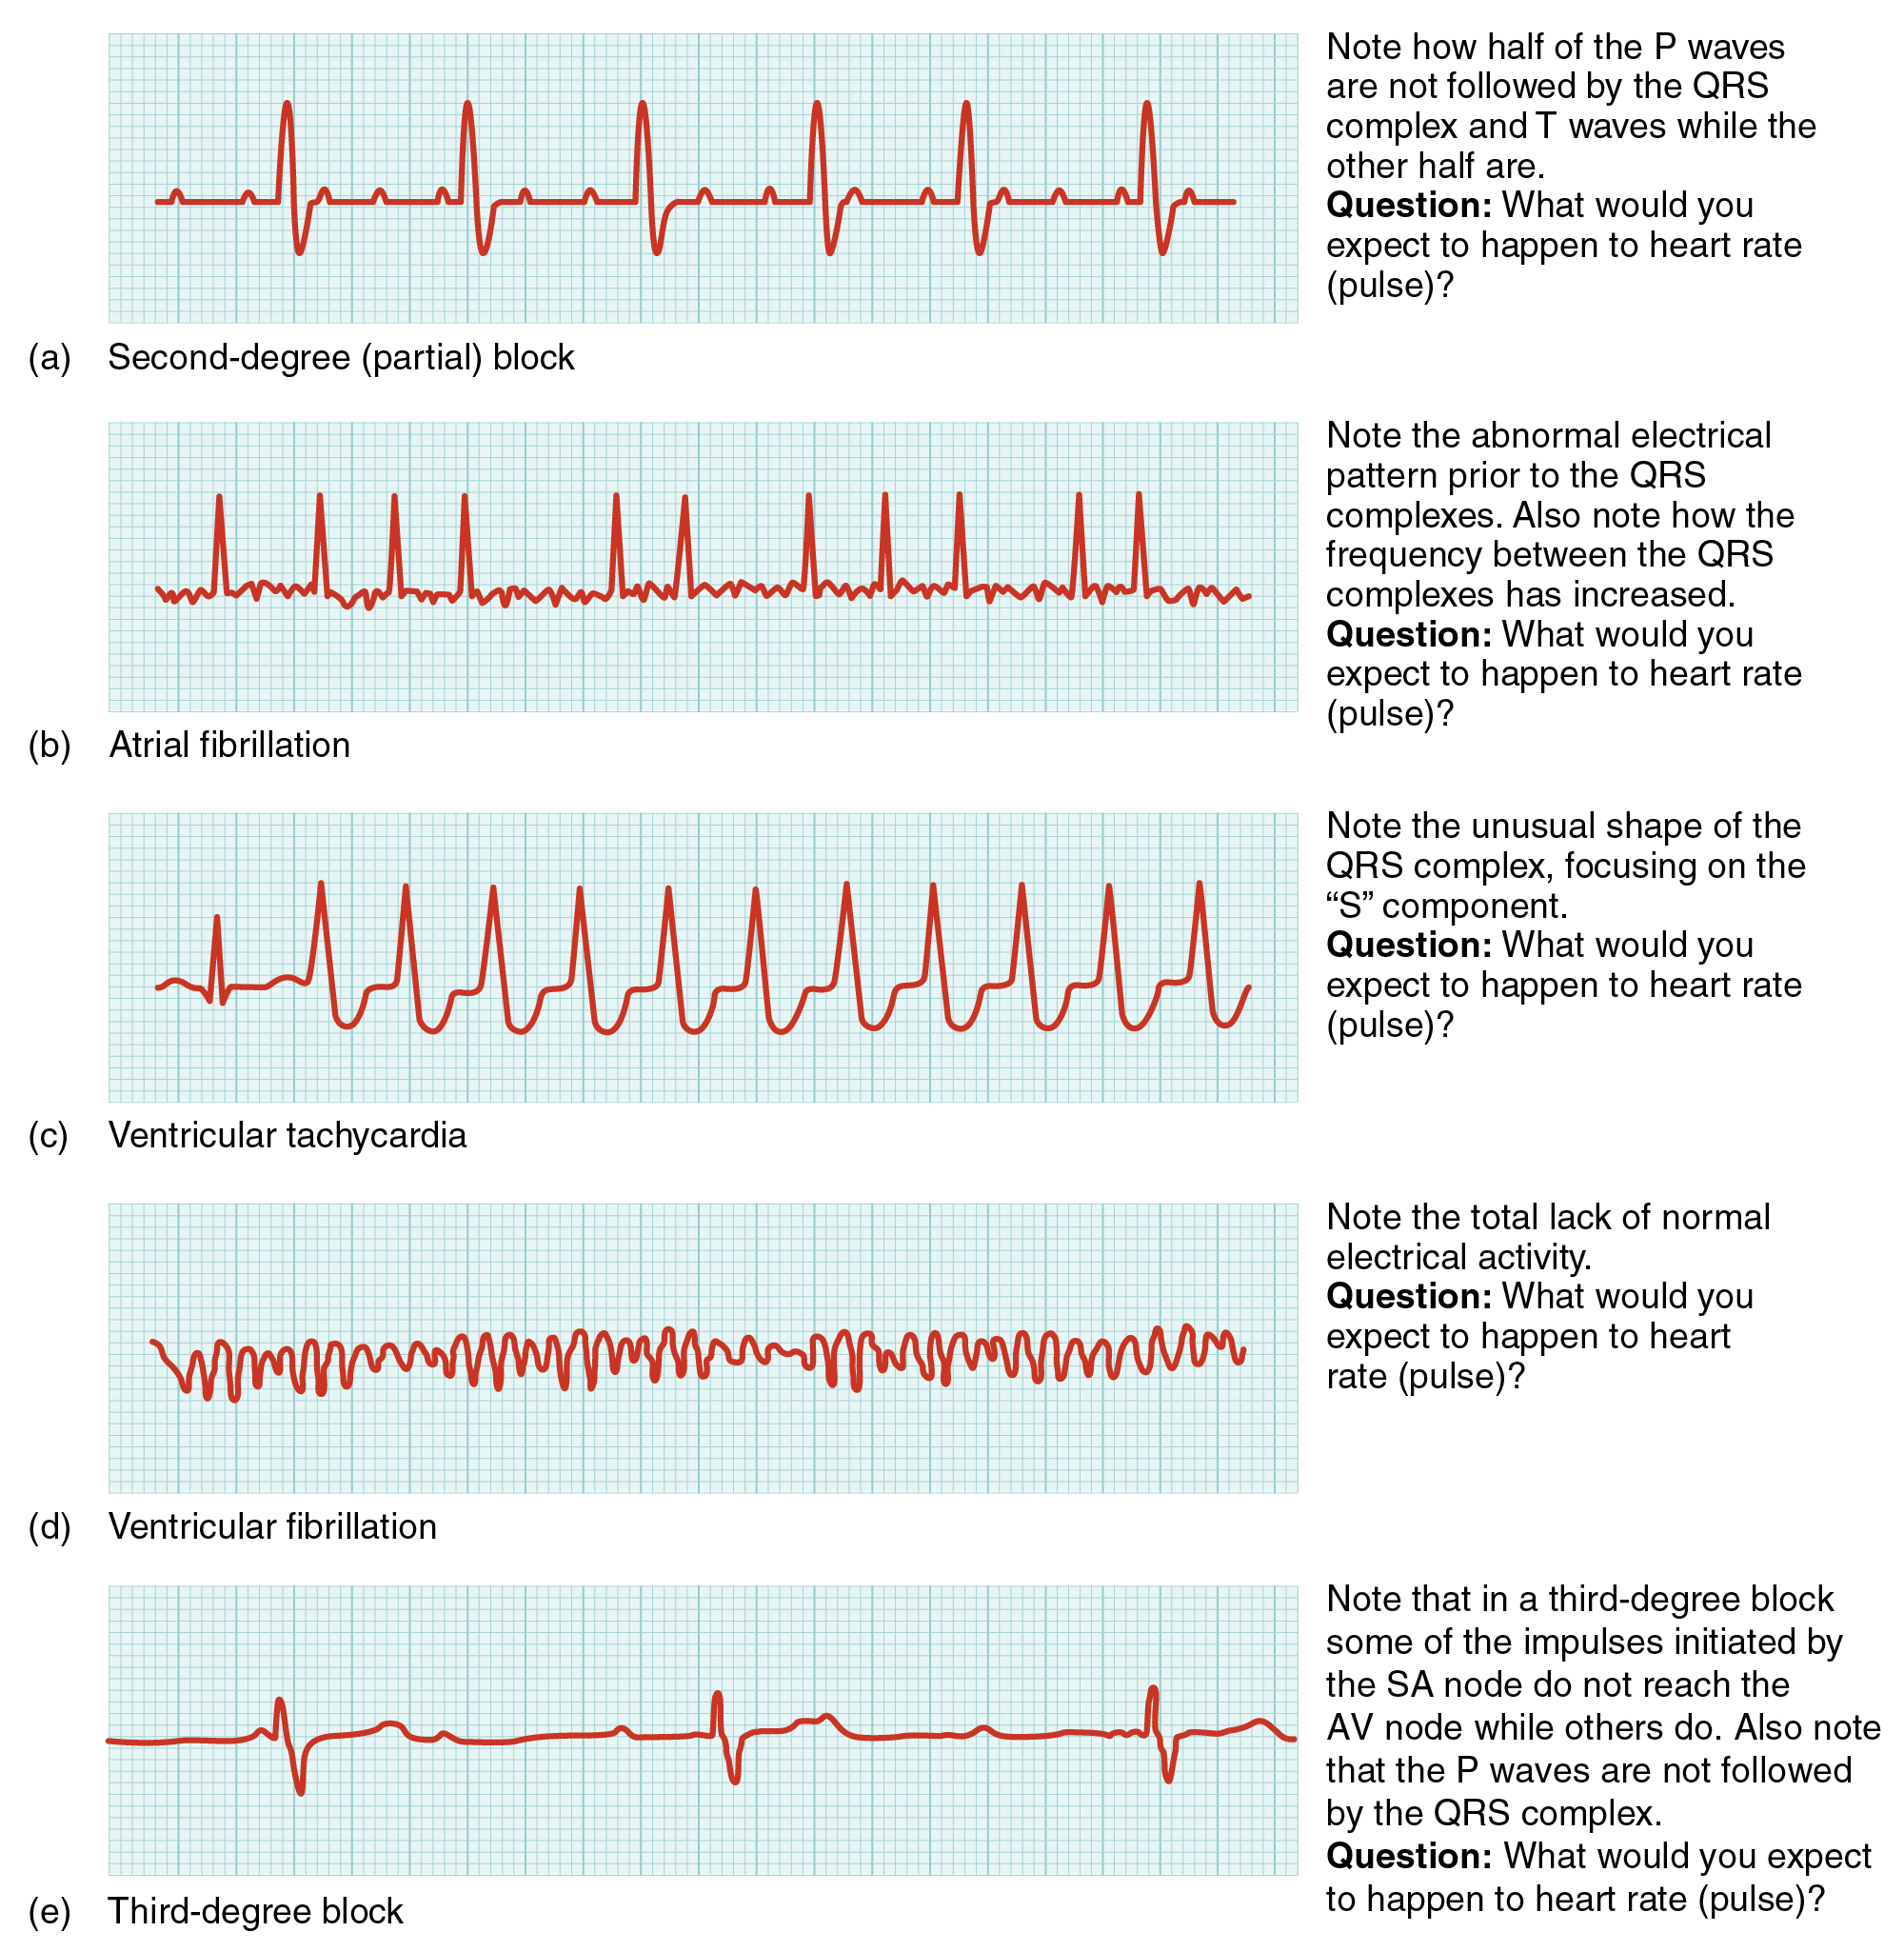 Nesta imagem é mostrado o ciclo QT para diferentes condições cardíacas. De cima para baixo, as arritmias apresentadas são bloqueio parcial de segundo grau, fibrilação atrial, taquicardia ventricular, fibrilação ventricular e bloqueio de terceiro grau.